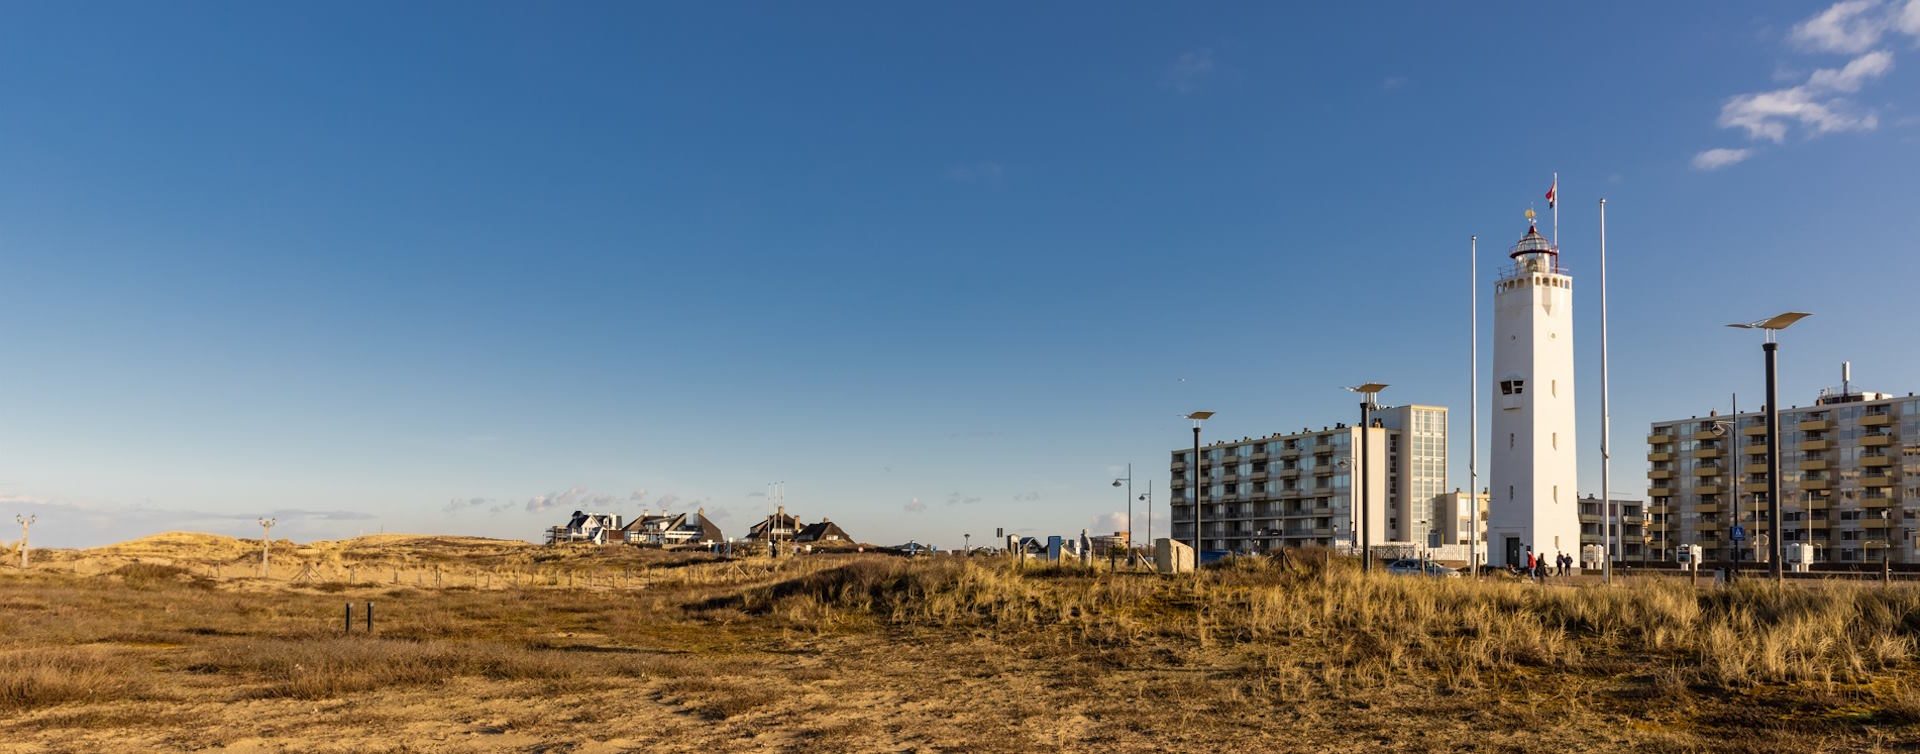 De omgeving van Ancora Adviesgroep, RegioBank in Noordwijk en Katwijk